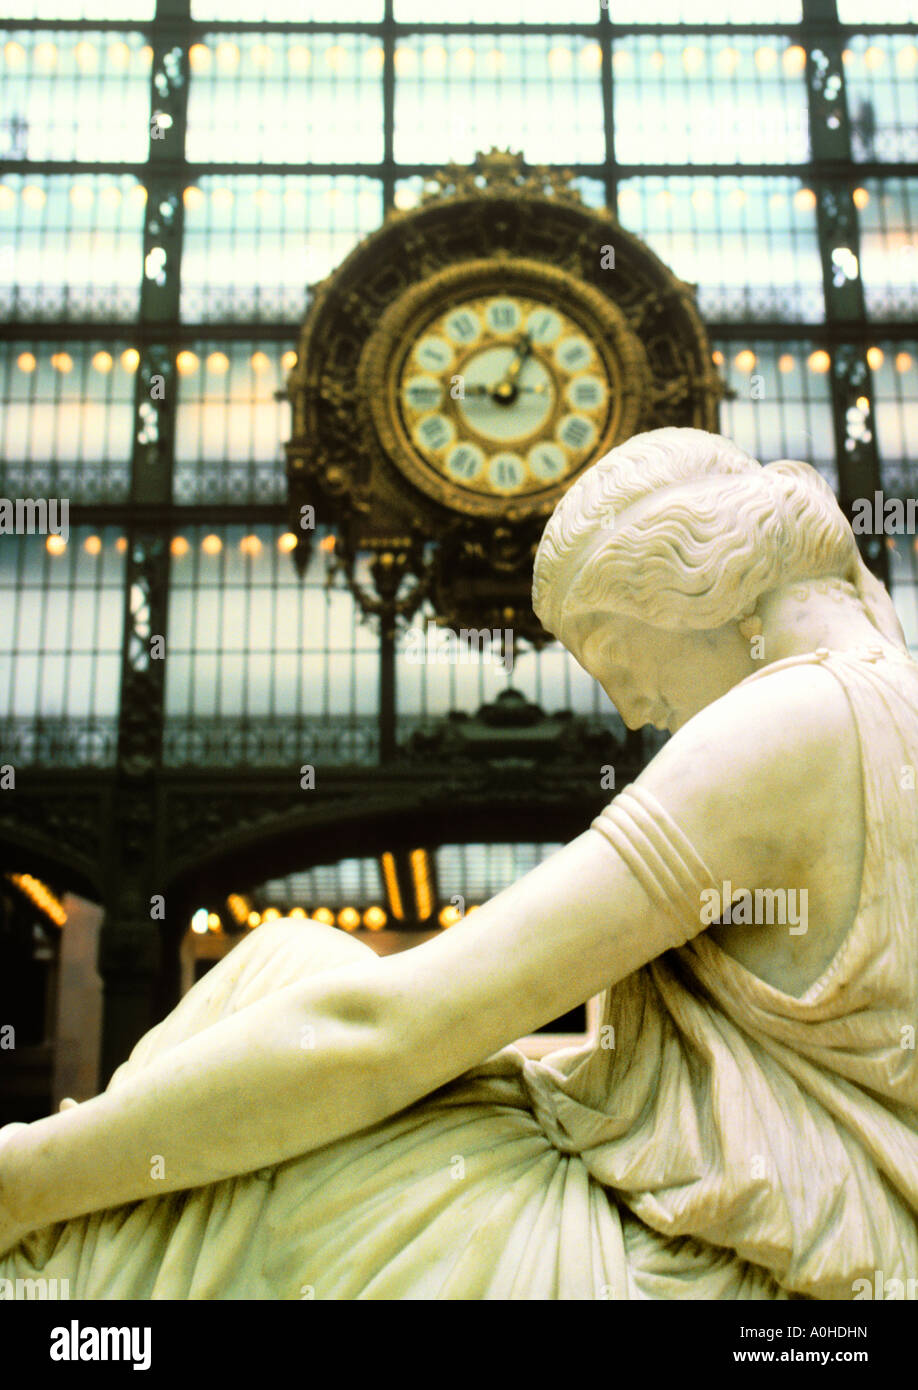 Parigi interno del Musee d'Orsay sulla riva sinistra, ex stazione ferroviaria la Gare d'Orsay. Rive della Senna sito patrimonio mondiale dell'UNESCO. Francia Foto Stock